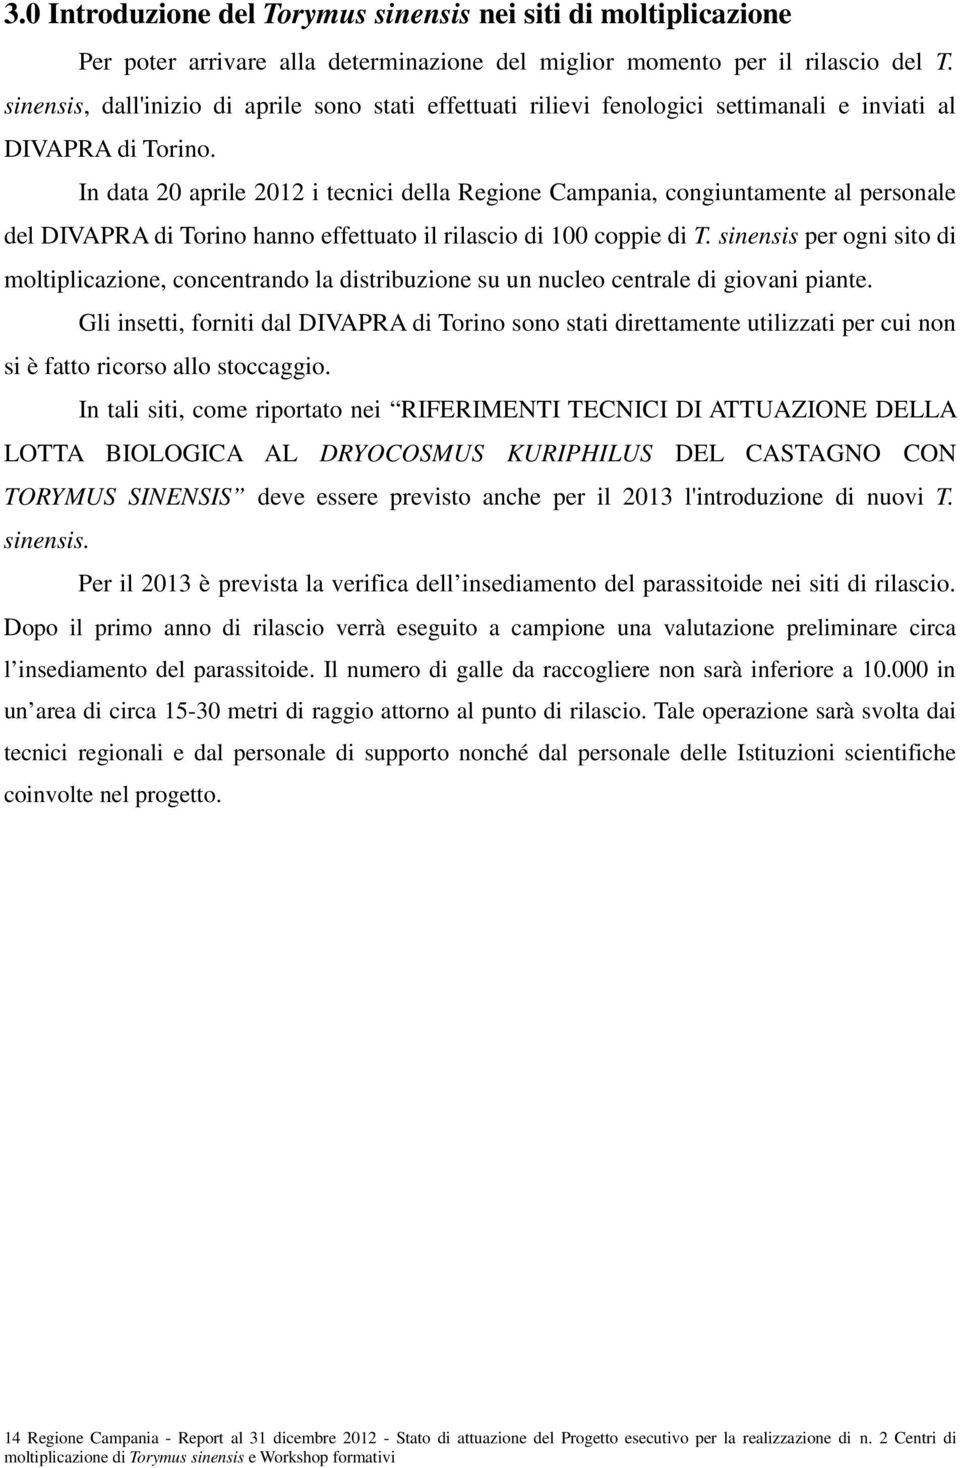 In data 20 aprile 2012 i tecnici della Regione Campania, congiuntamente al personale del DIVAPRA di Torino hanno effettuato il rilascio di 100 coppie di T.